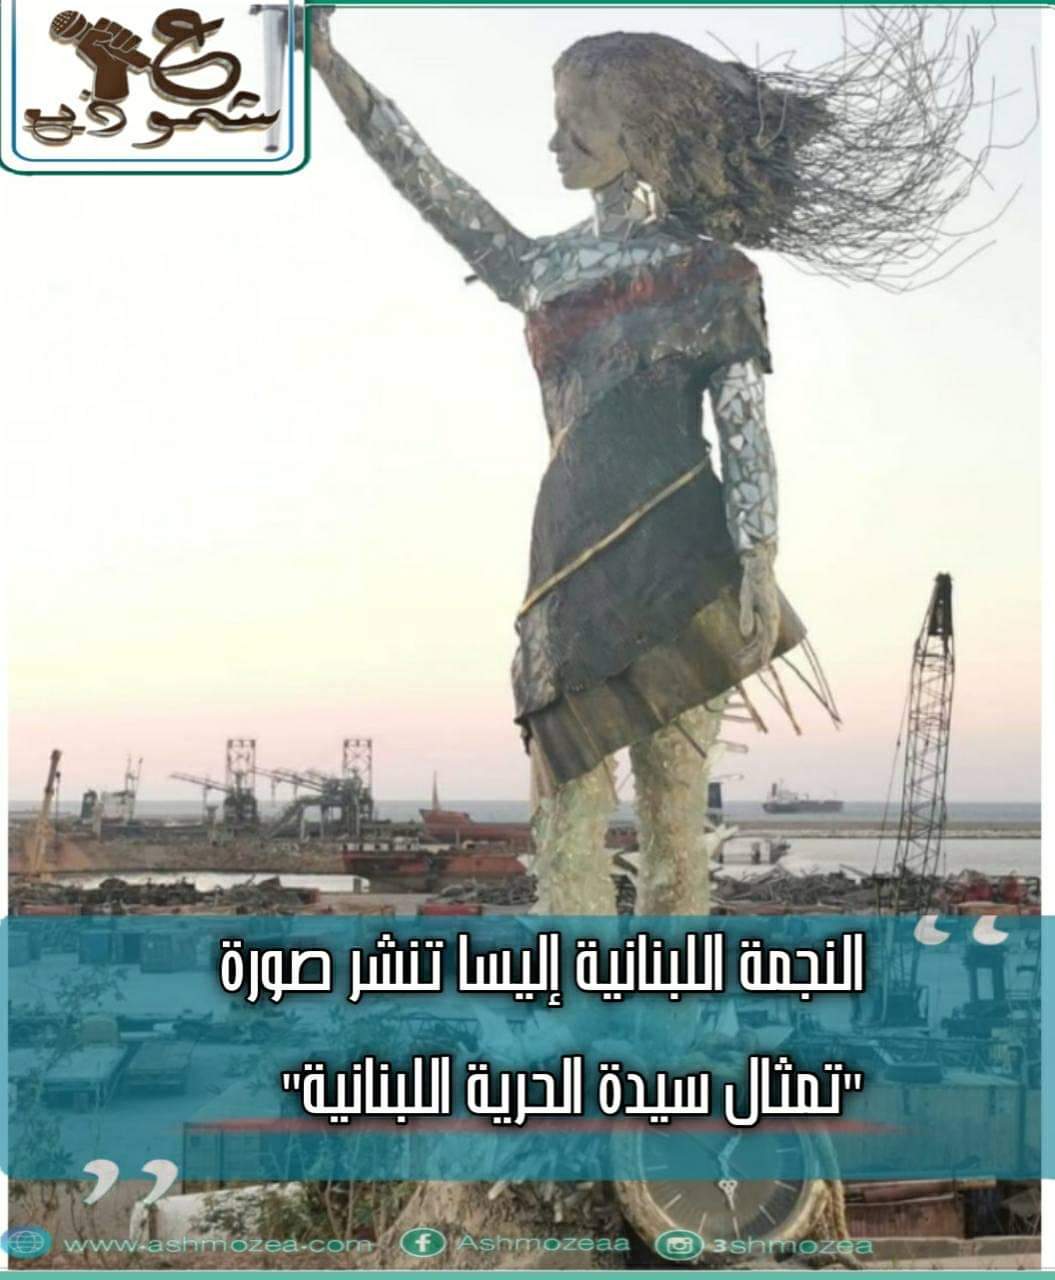 النجمة اللبنانية إليسا تنشر صورة "تمثال سيدة الحرية اللبنانية"